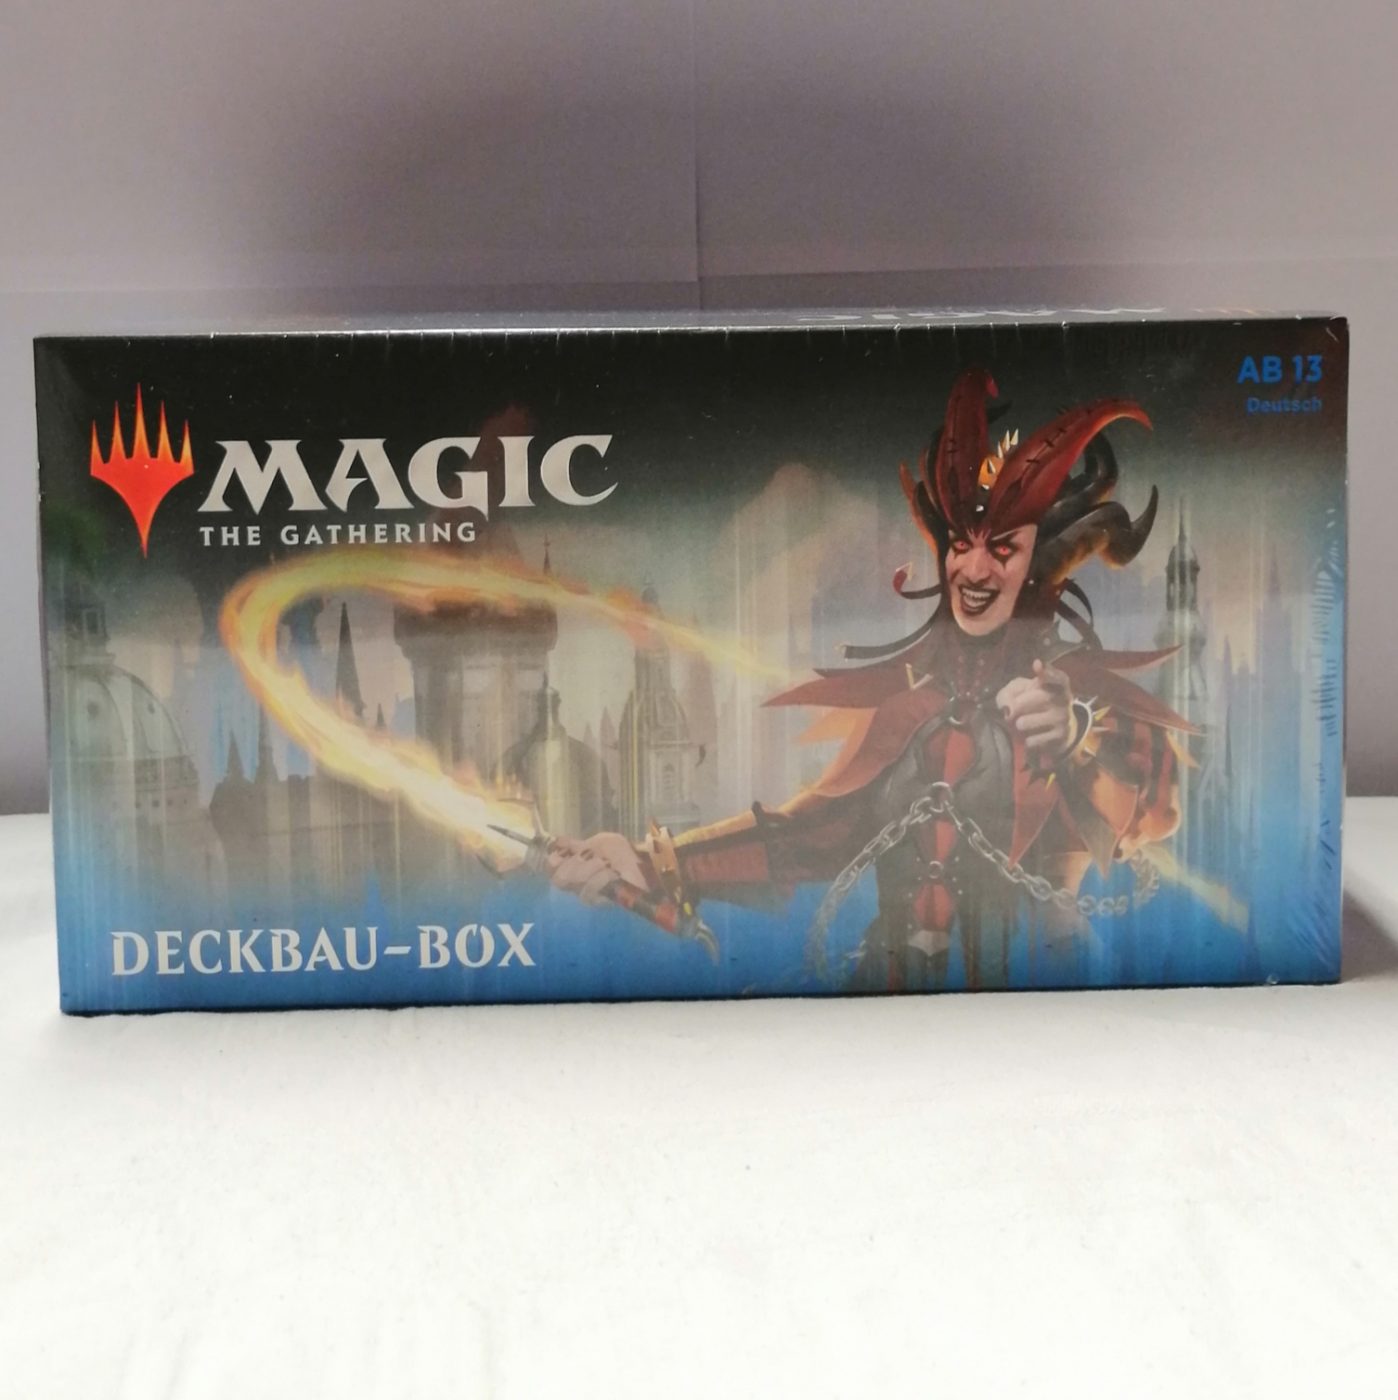 Magic: The Gathering Ravnicas Treue: Deckbau-Box vorne